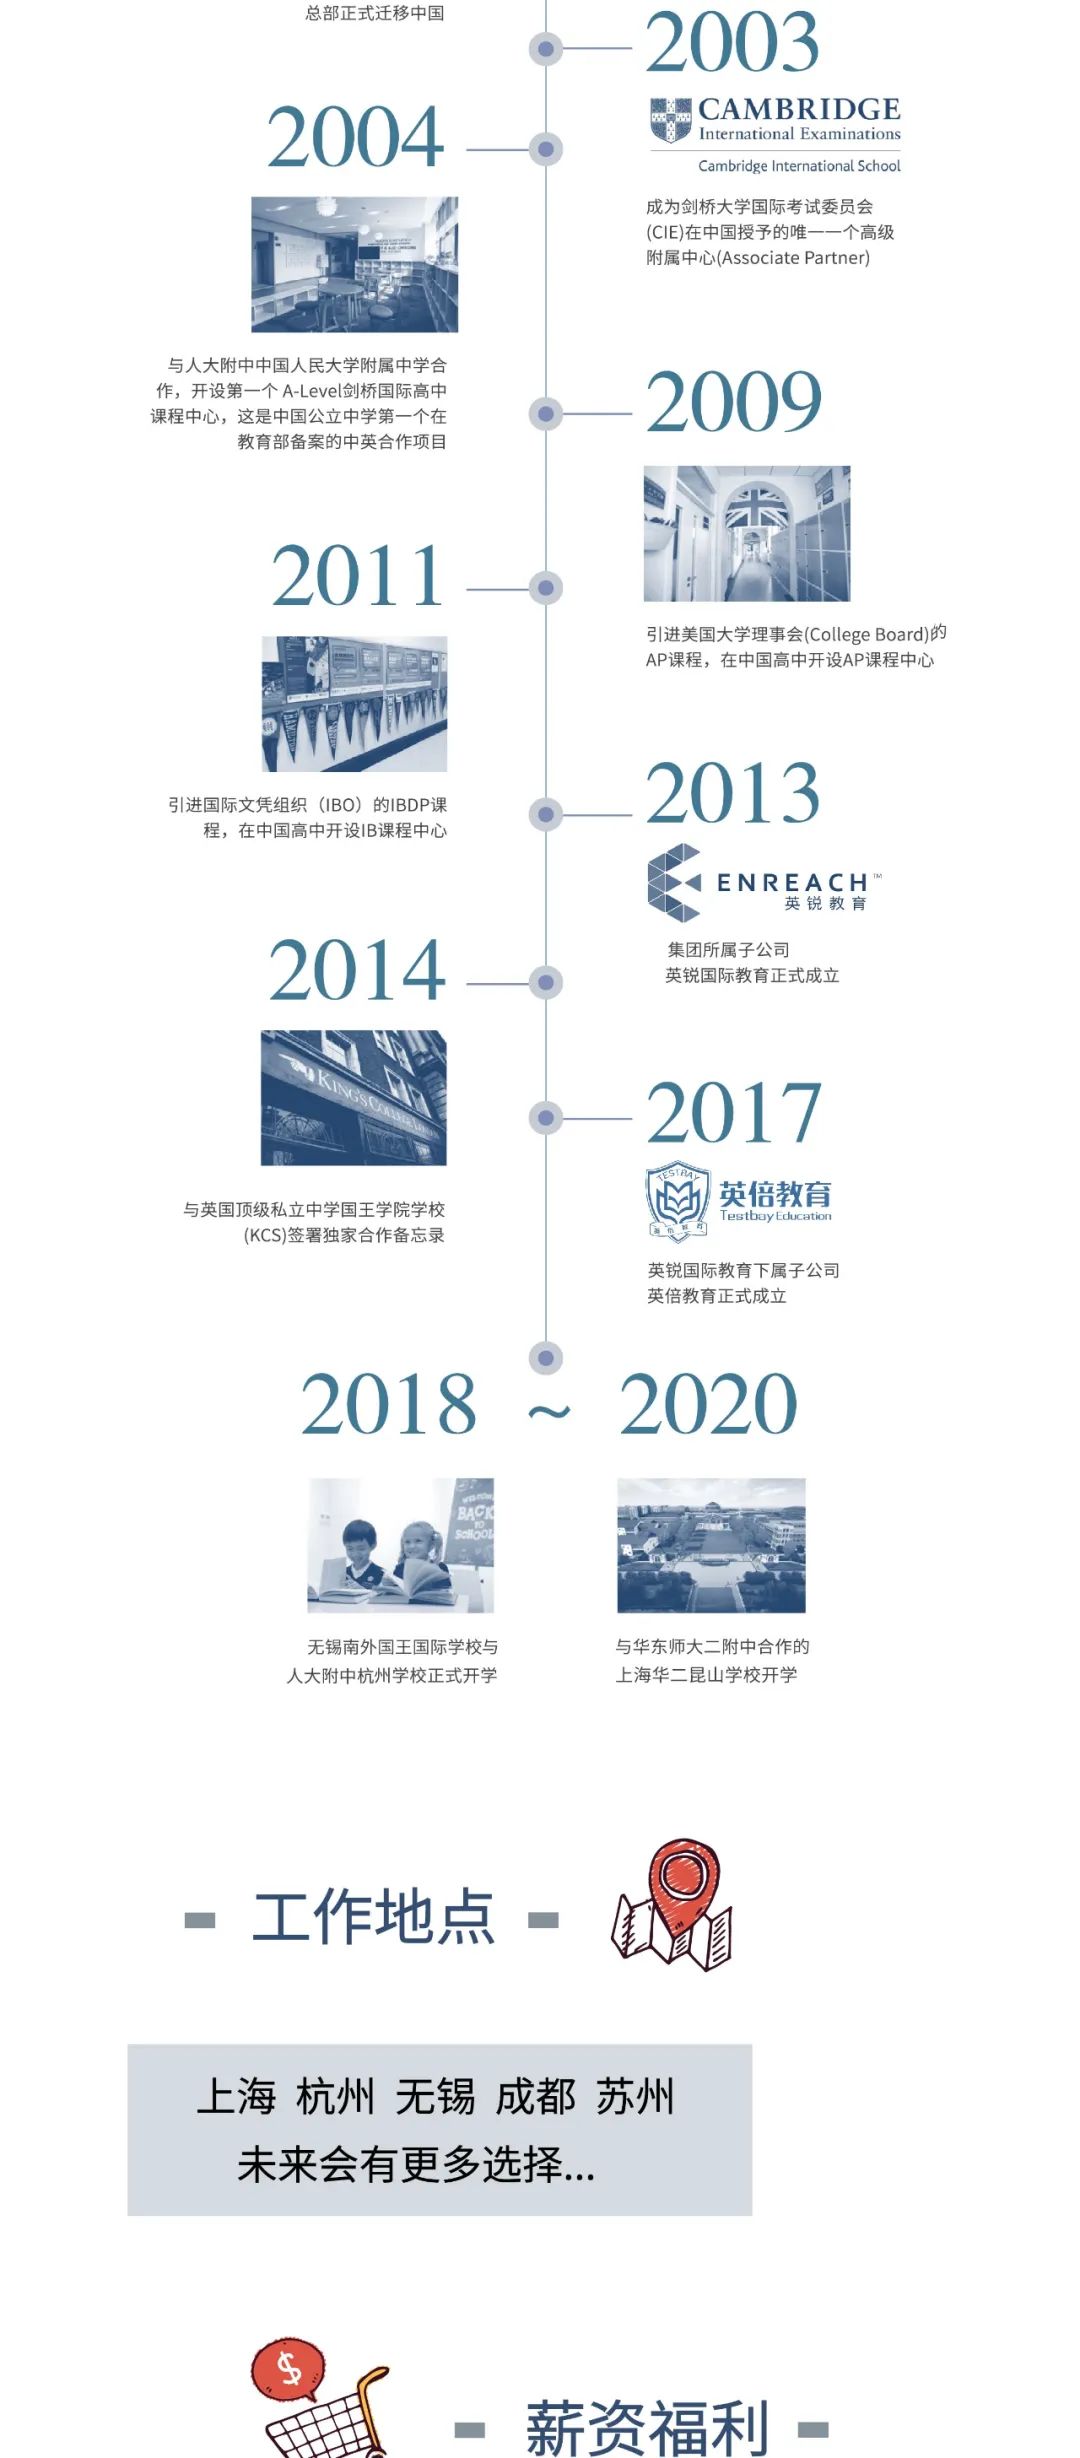 【就业资讯】2020，加入狄邦，桥接机遇！